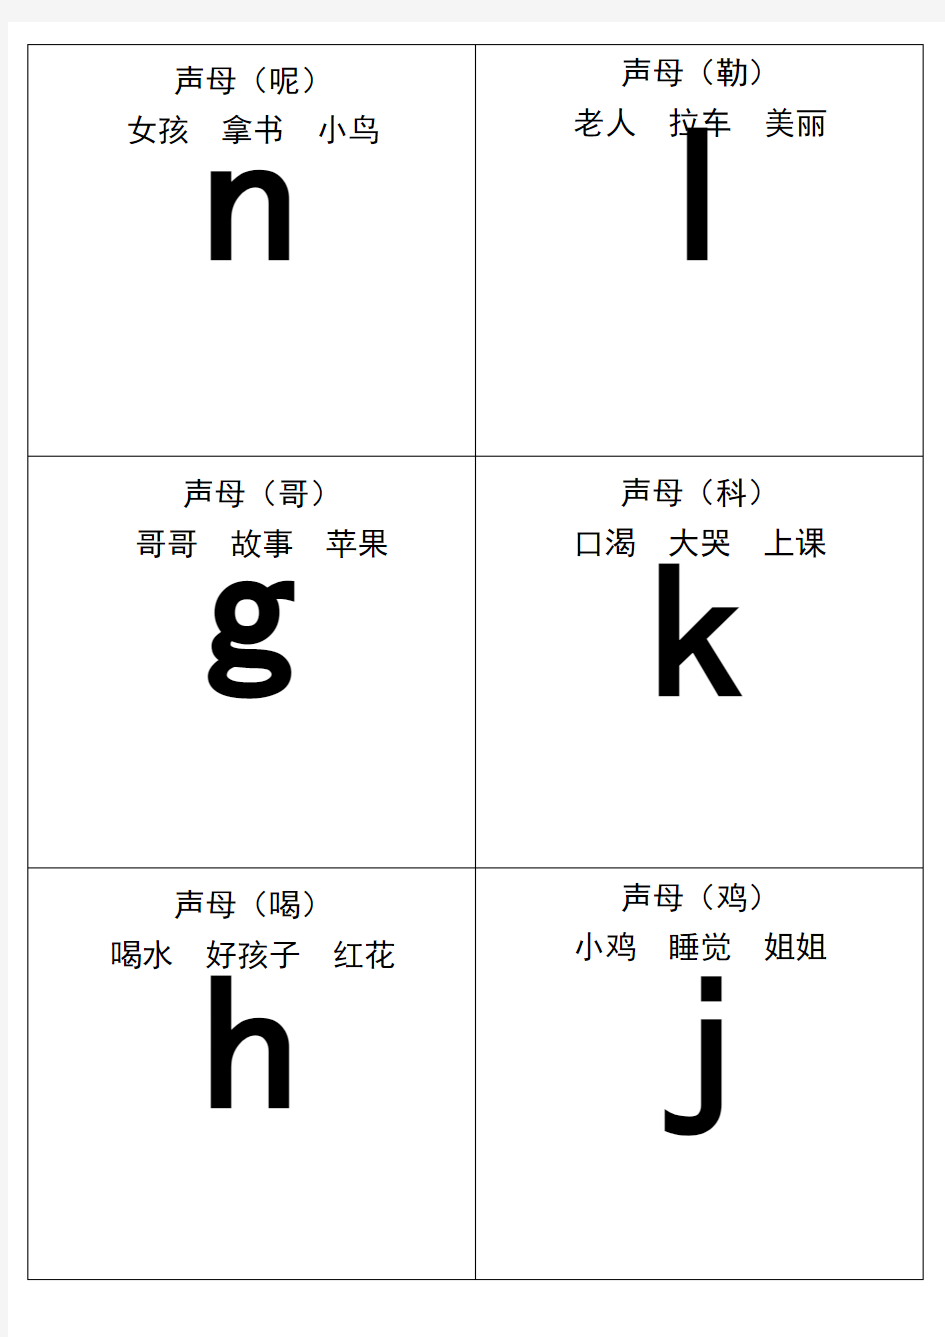 自己整理汉语拼音字母表卡片-读音